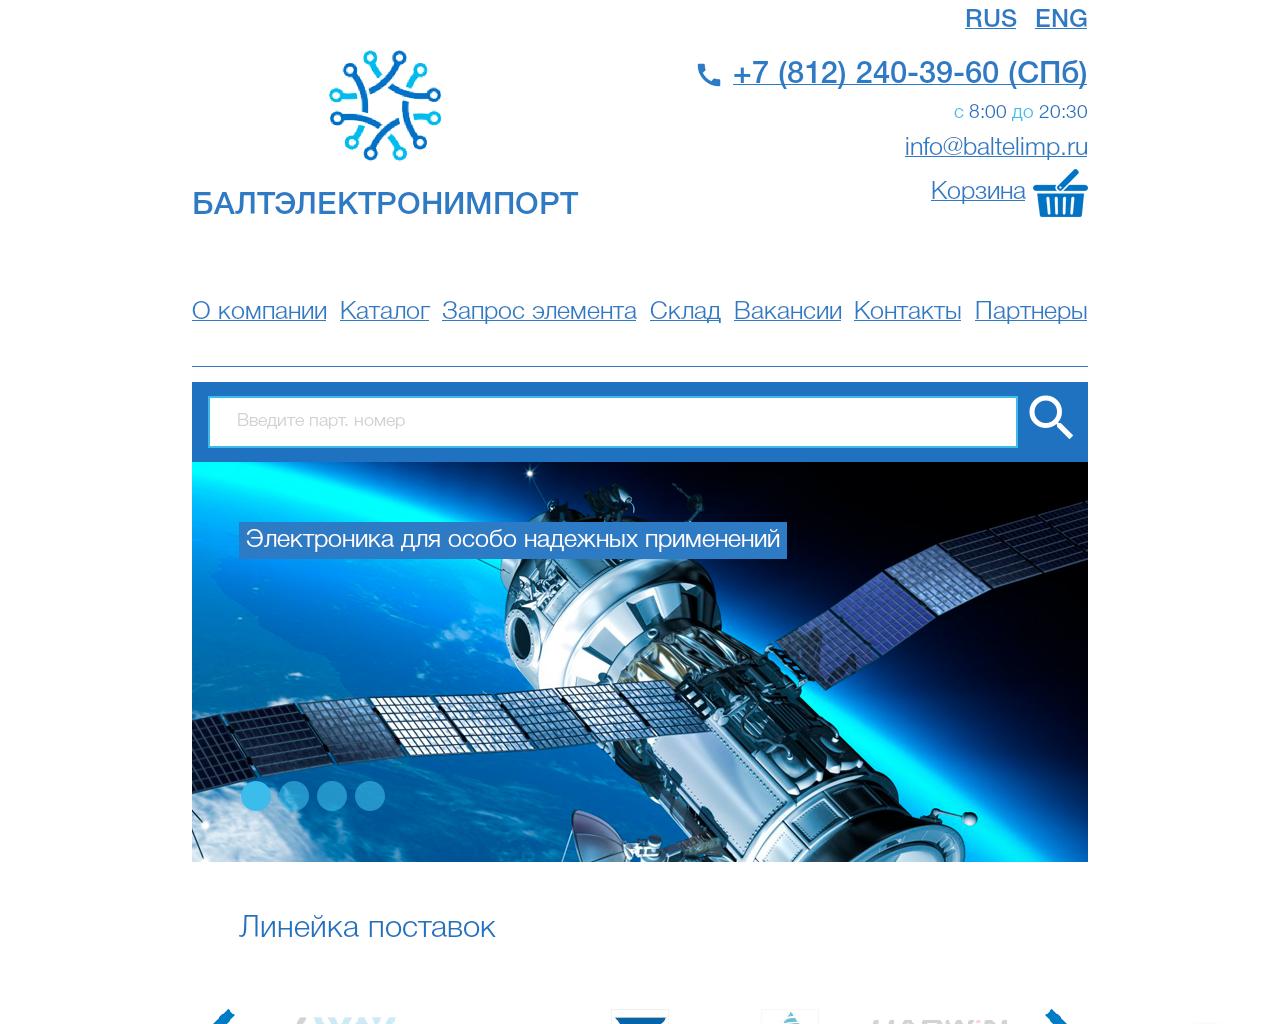 Изображение сайта baltelimp.ru в разрешении 1280x1024